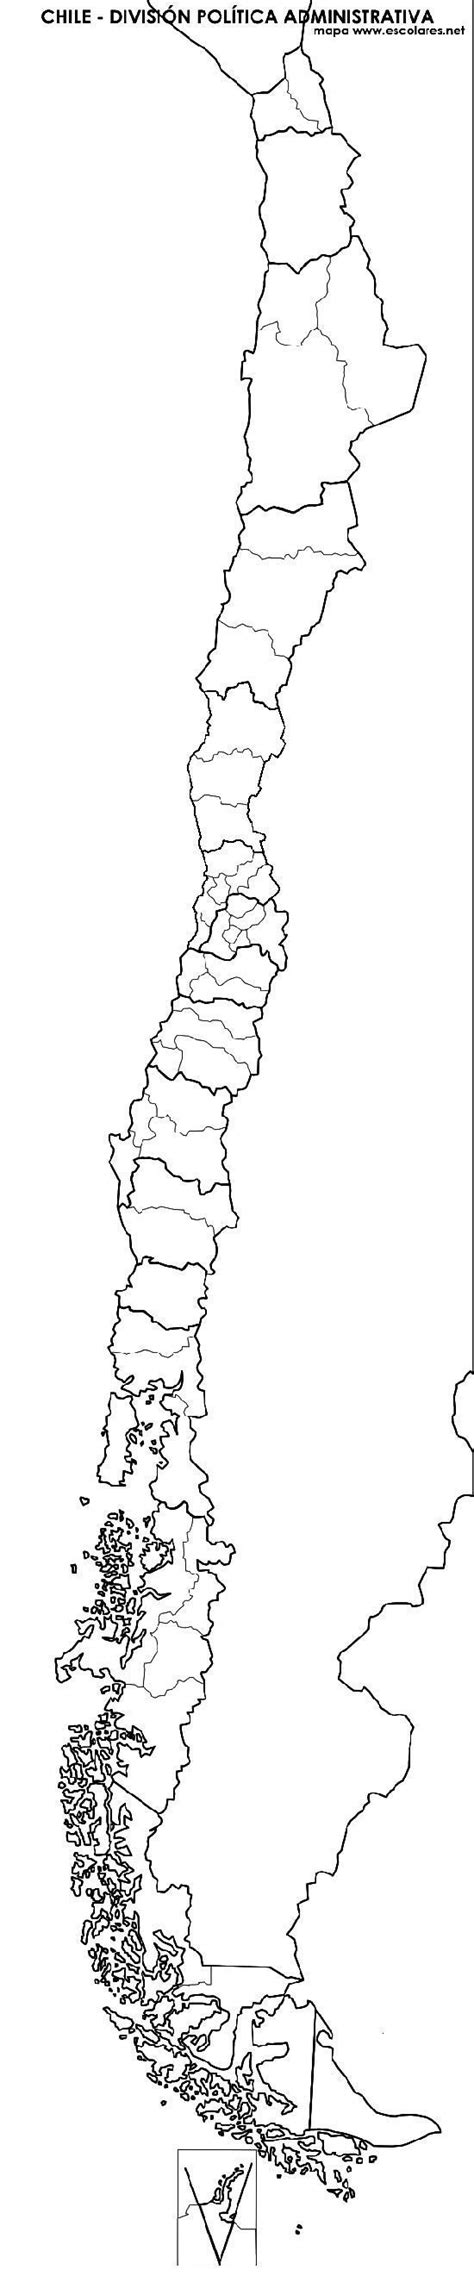 Blog De Geografia Mapa Do Chile Para Imprimir E Colorir Images